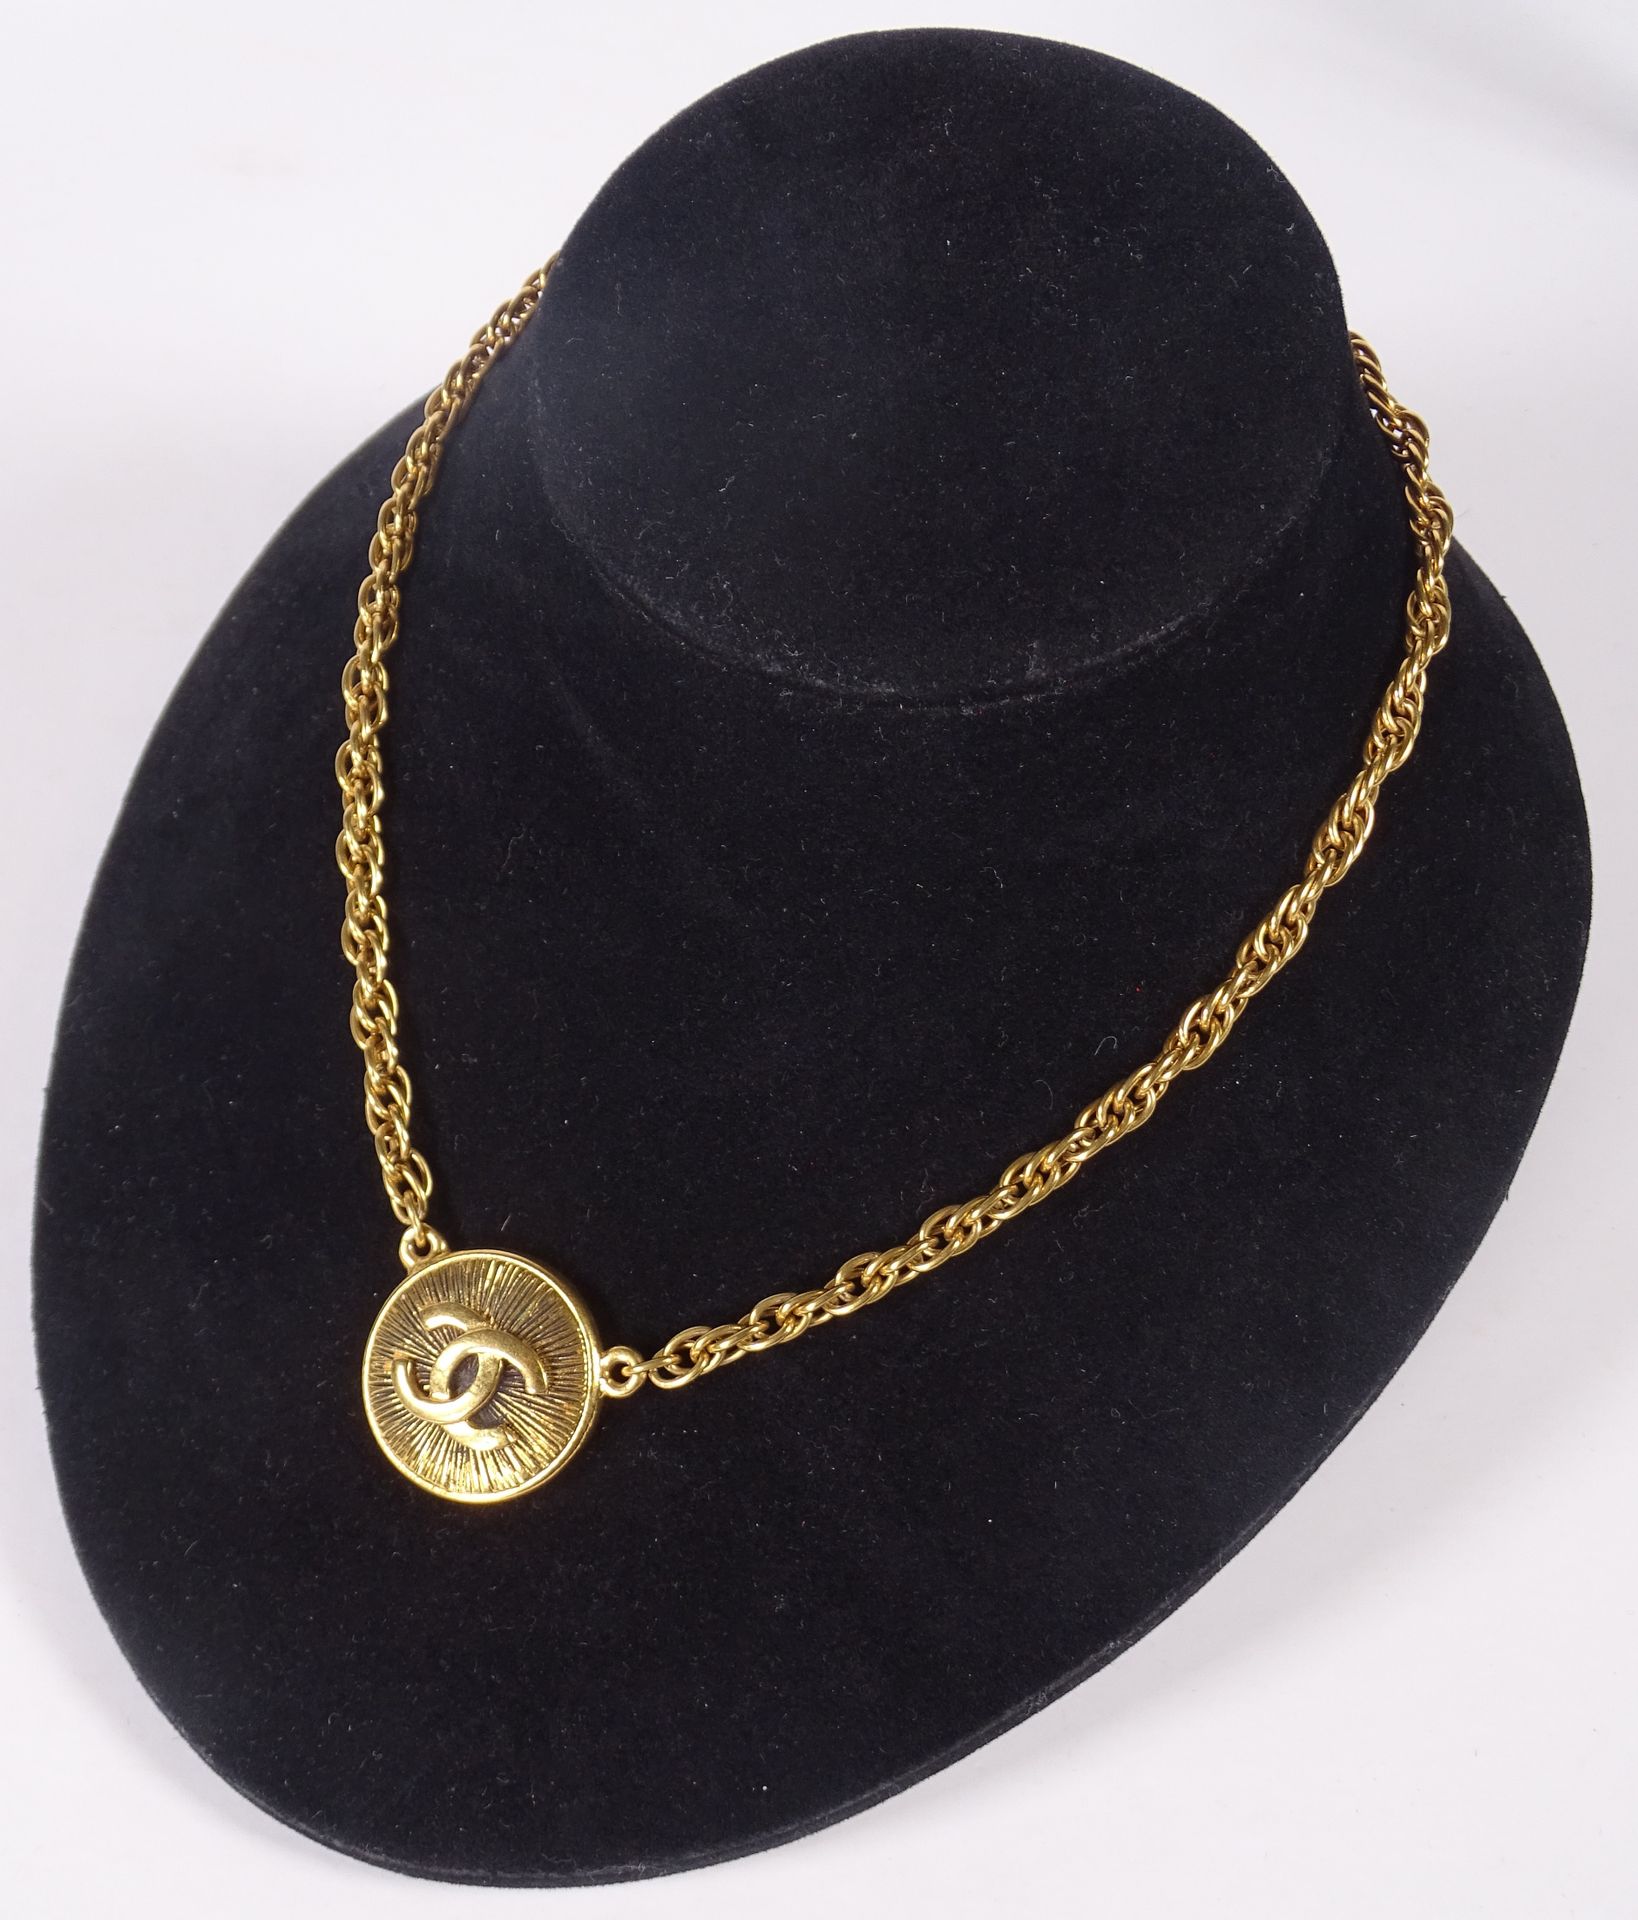 CHANEL Halskette mit einem monogrammierten Medaillon.

Länge: 38 cm.